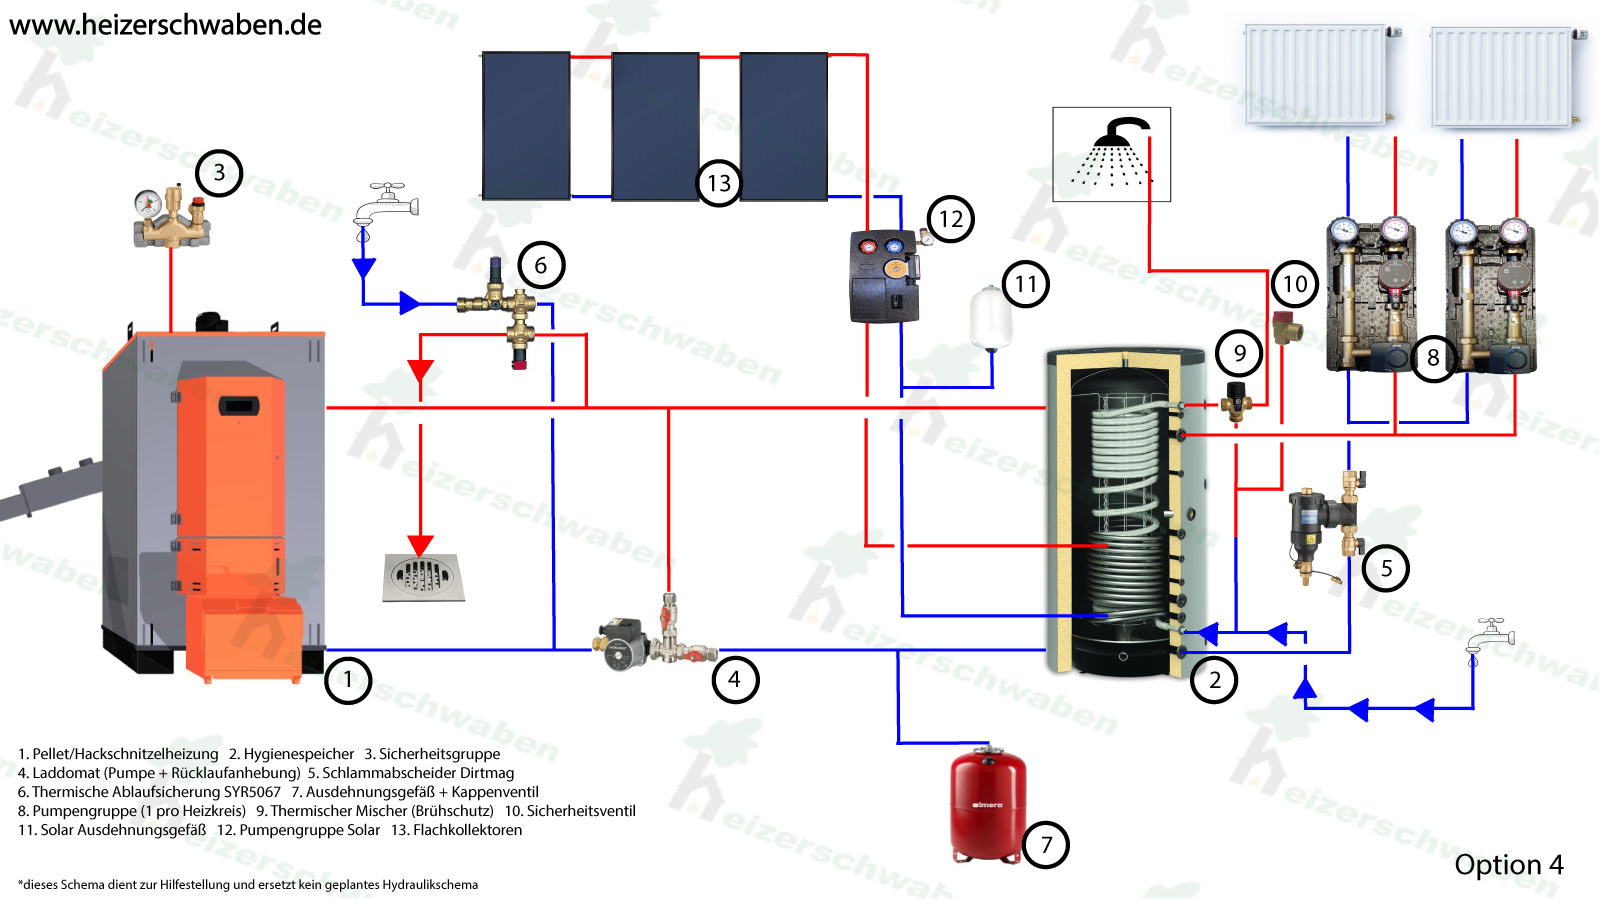 Hackschnitzelheizung im Komplett Set EG Multifuel Option 4 mit Hygienespeicher und Solar Set mit Flachkollektoren